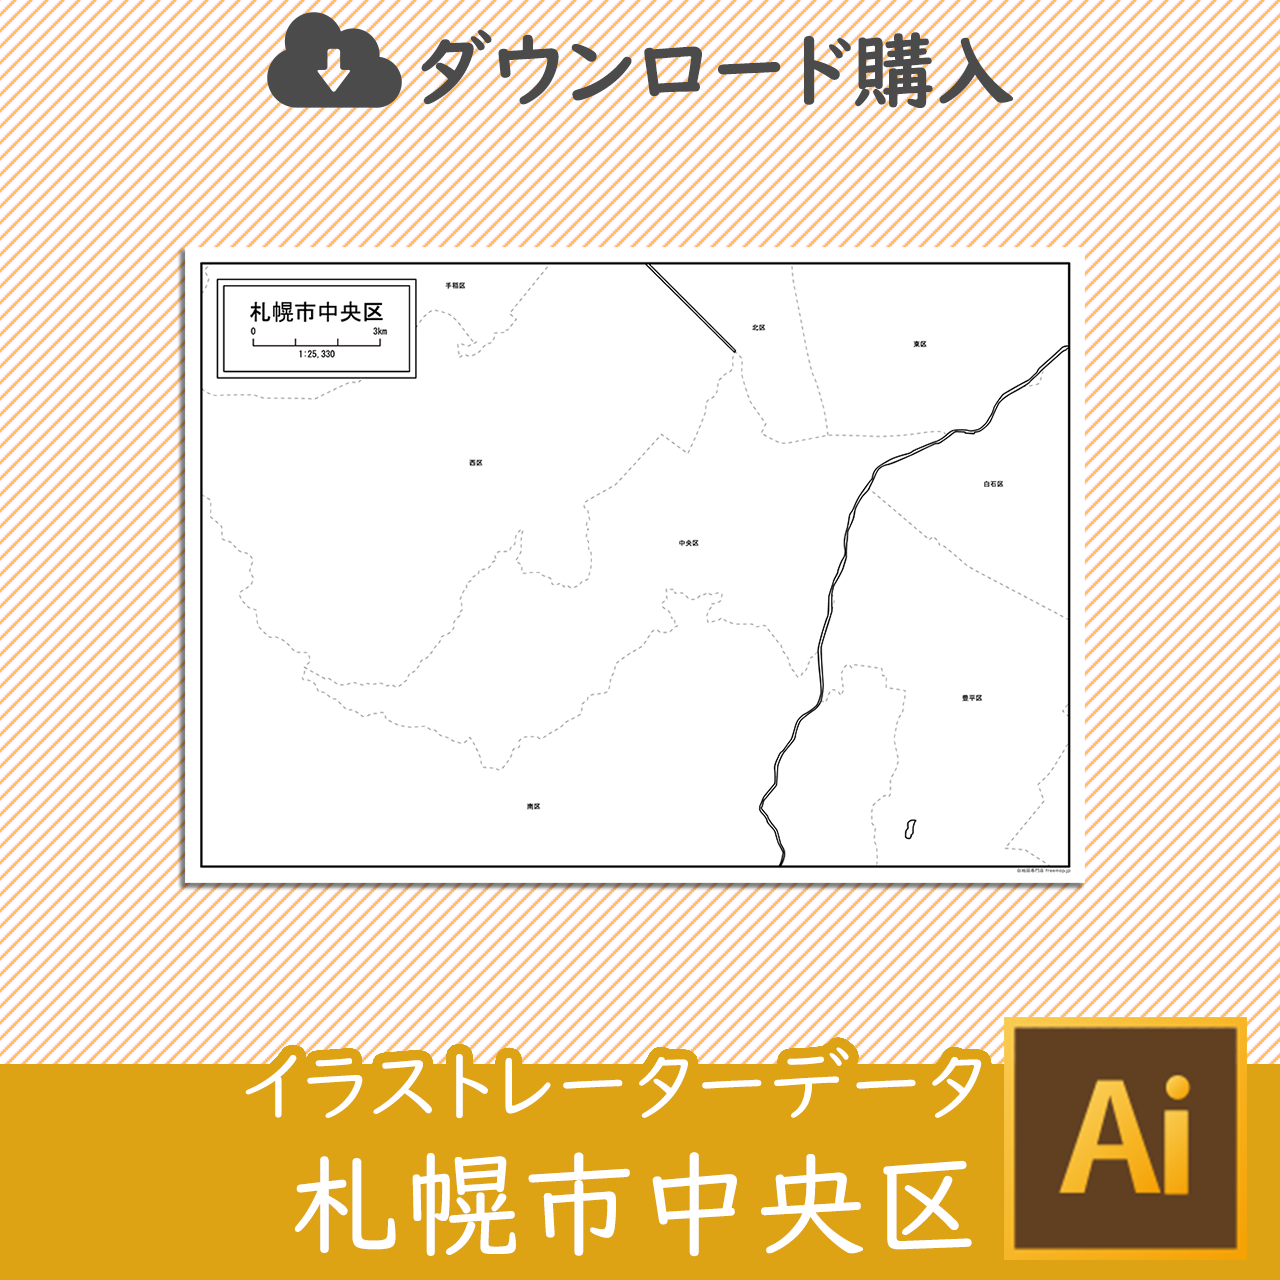 札幌市中央区のaiデータのサムネイル画像